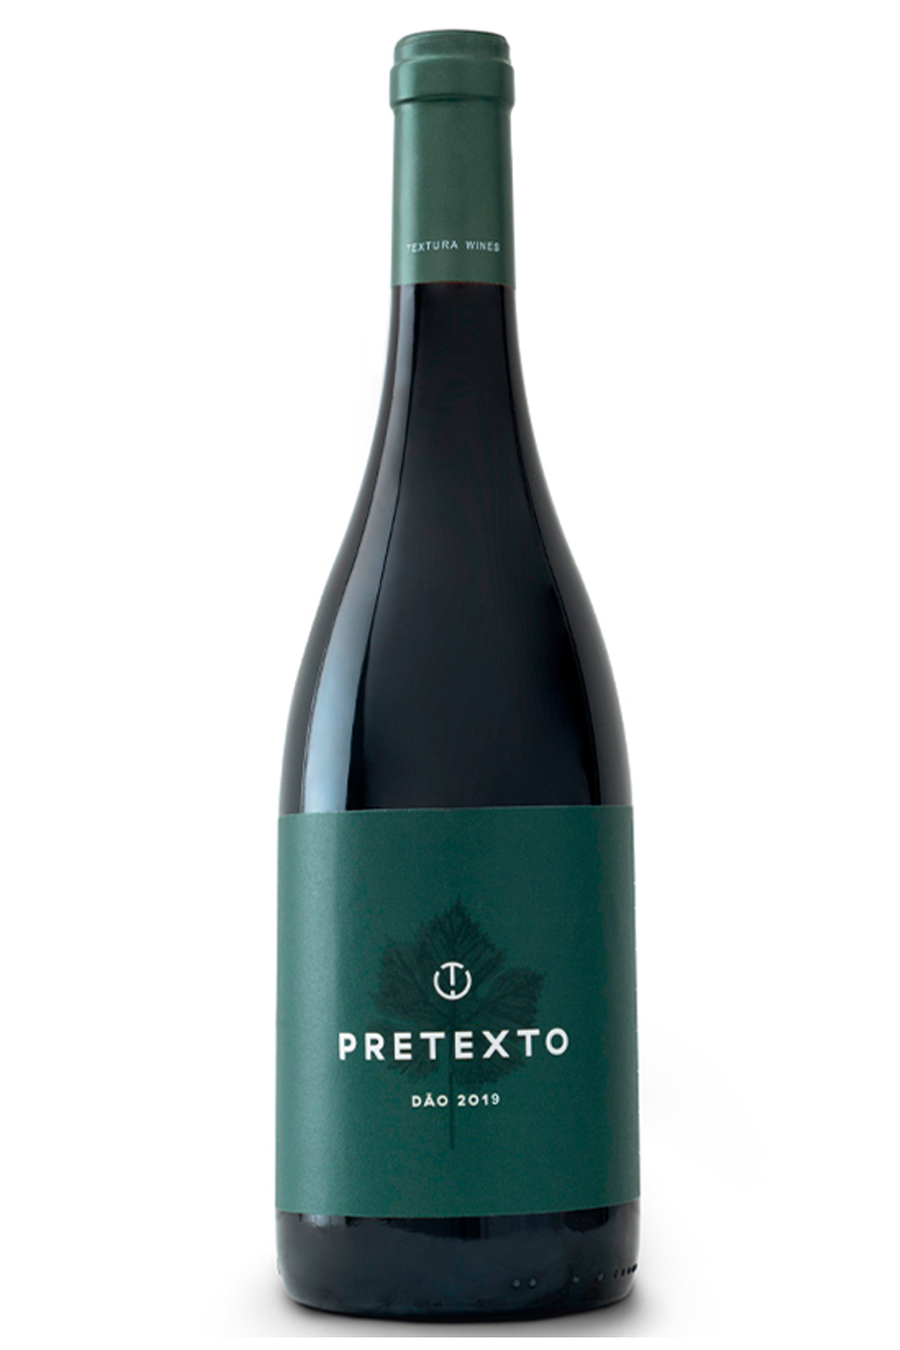 Textura Wines Pretexto Tinto DOP Dão 2019